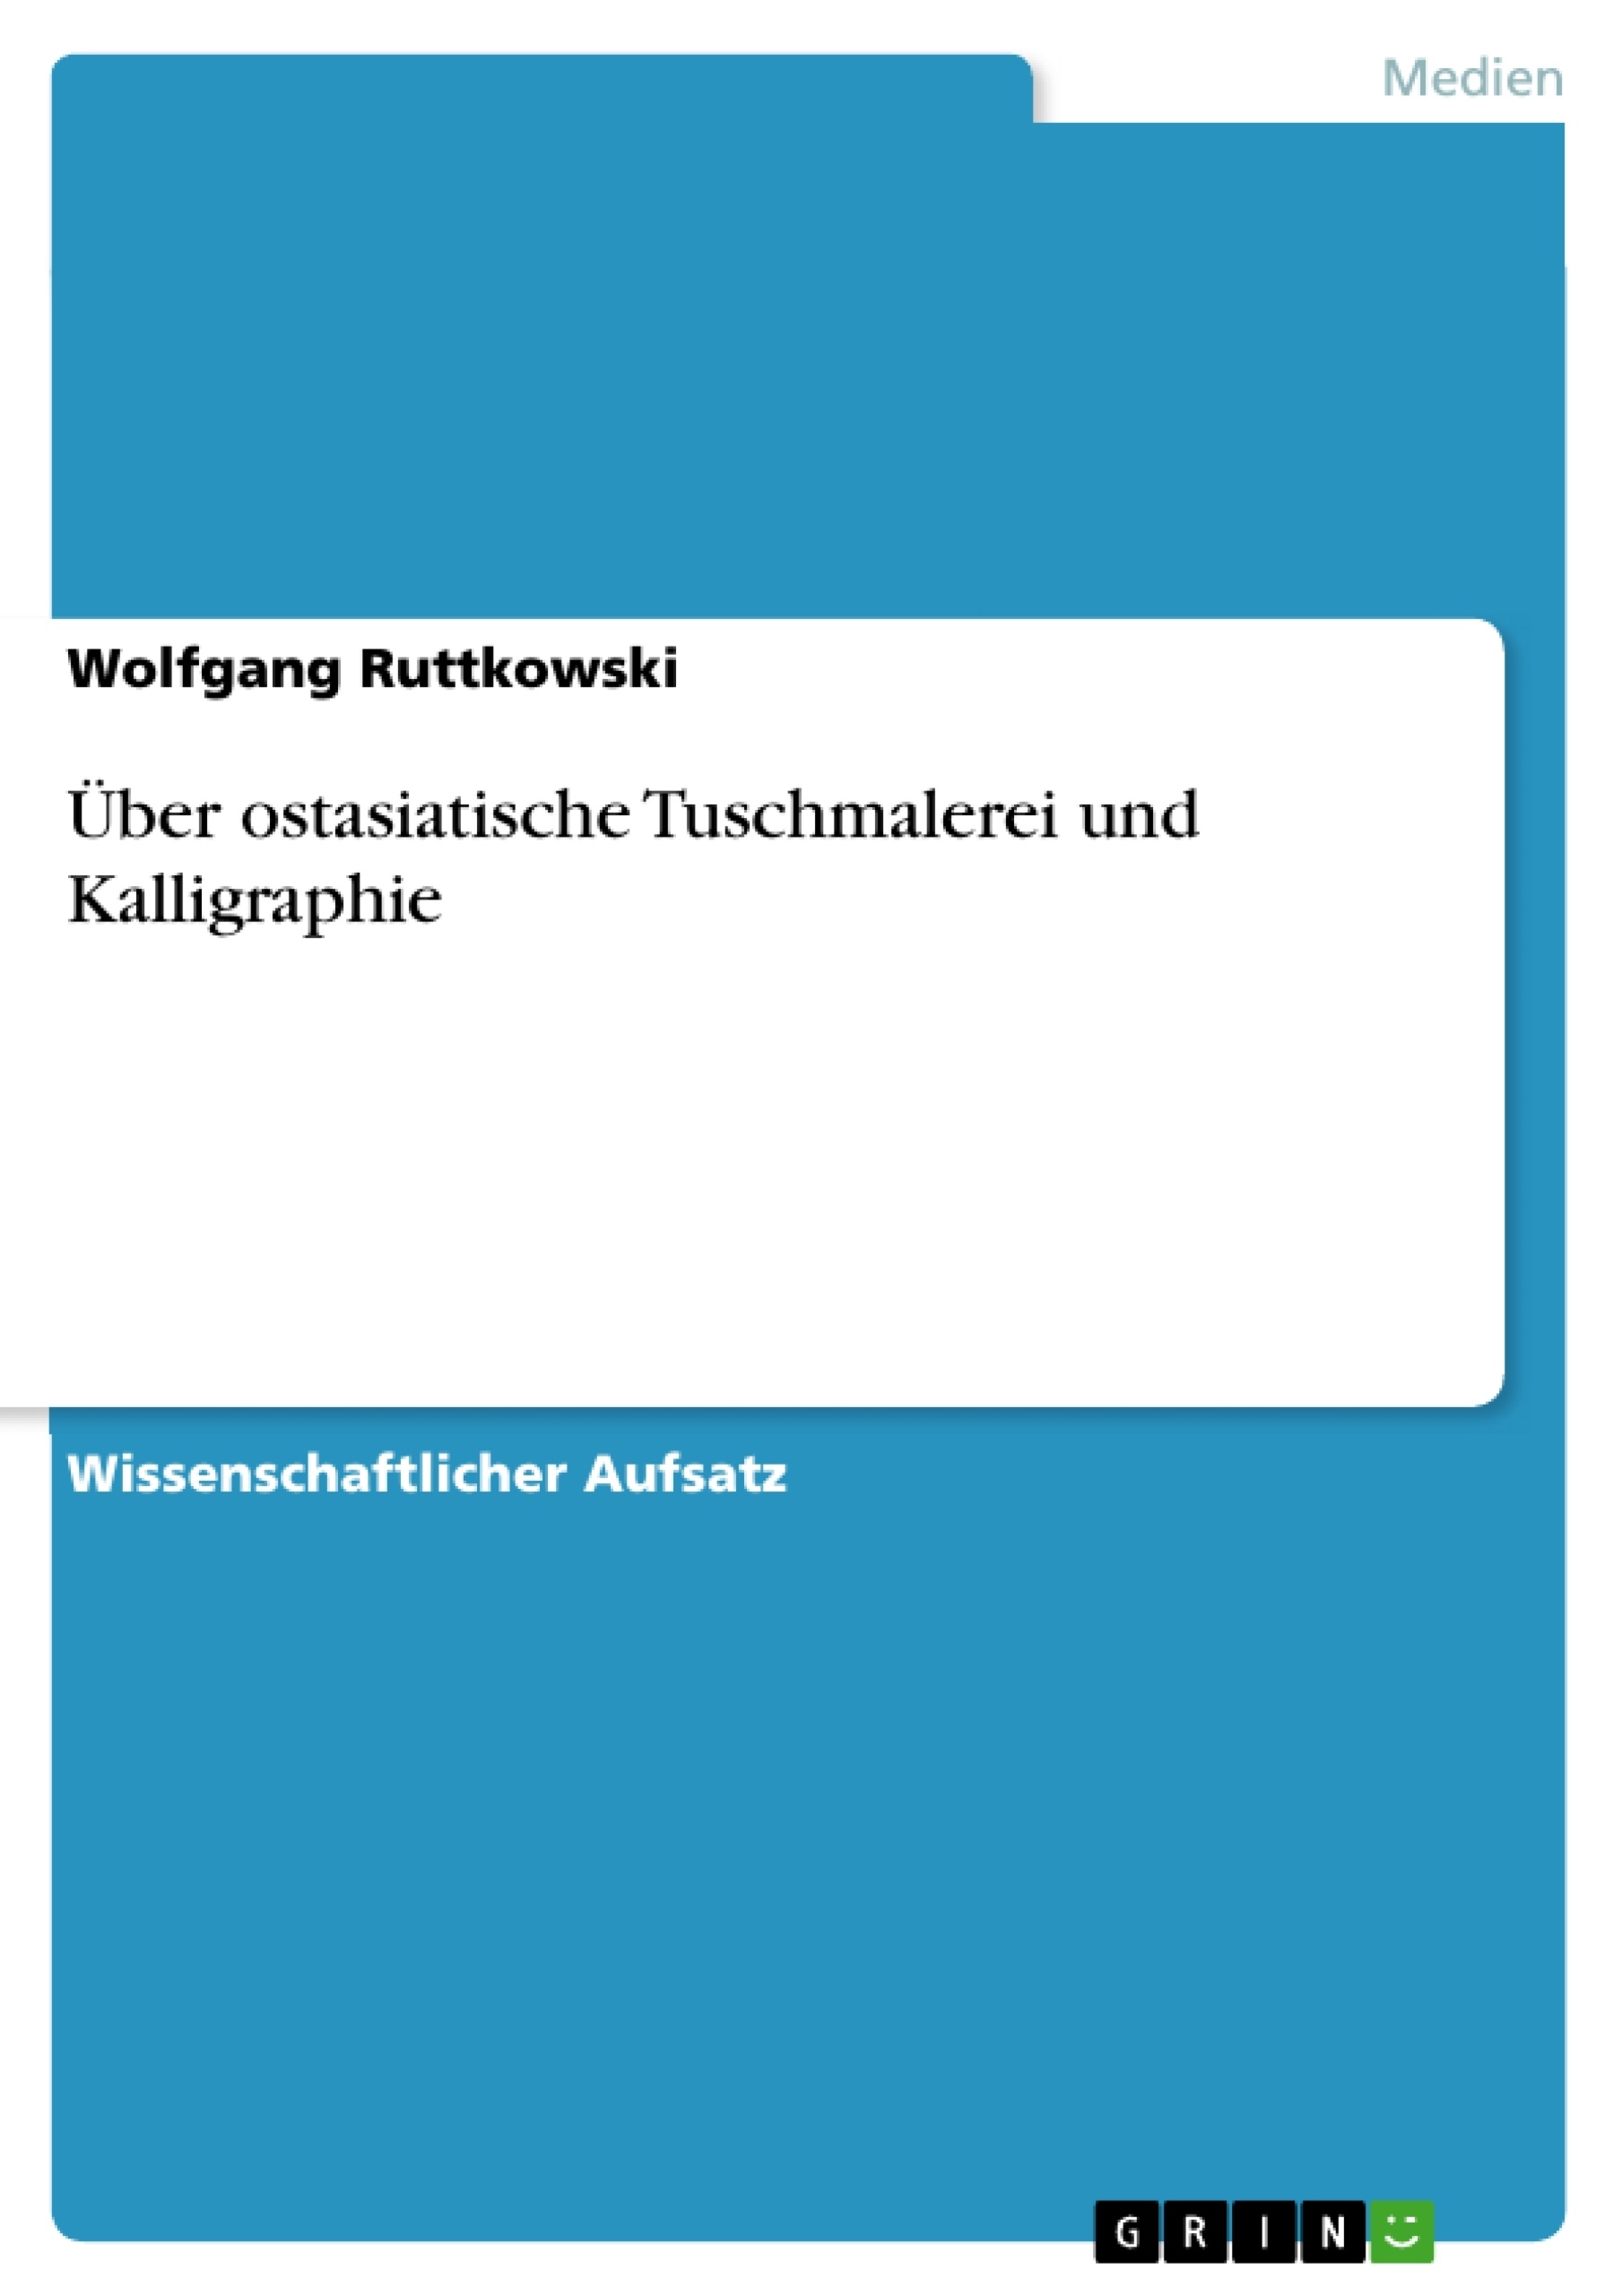 Title: Über ostasiatische Tuschmalerei und Kalligraphie